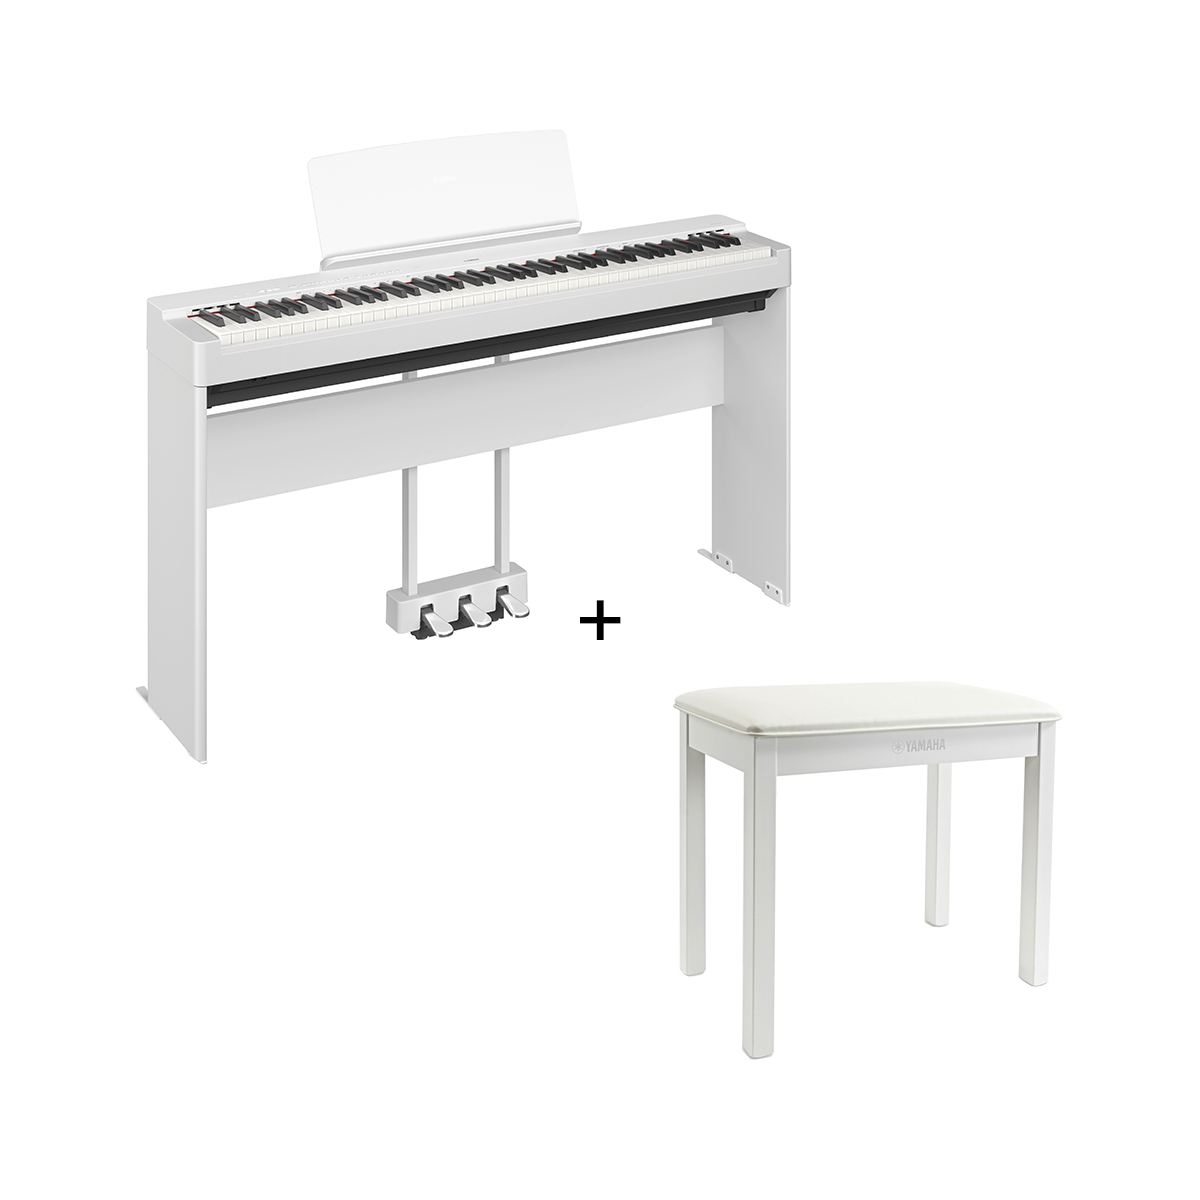 YAMAHA P-225WH: Piano portable blanc de toute beauté